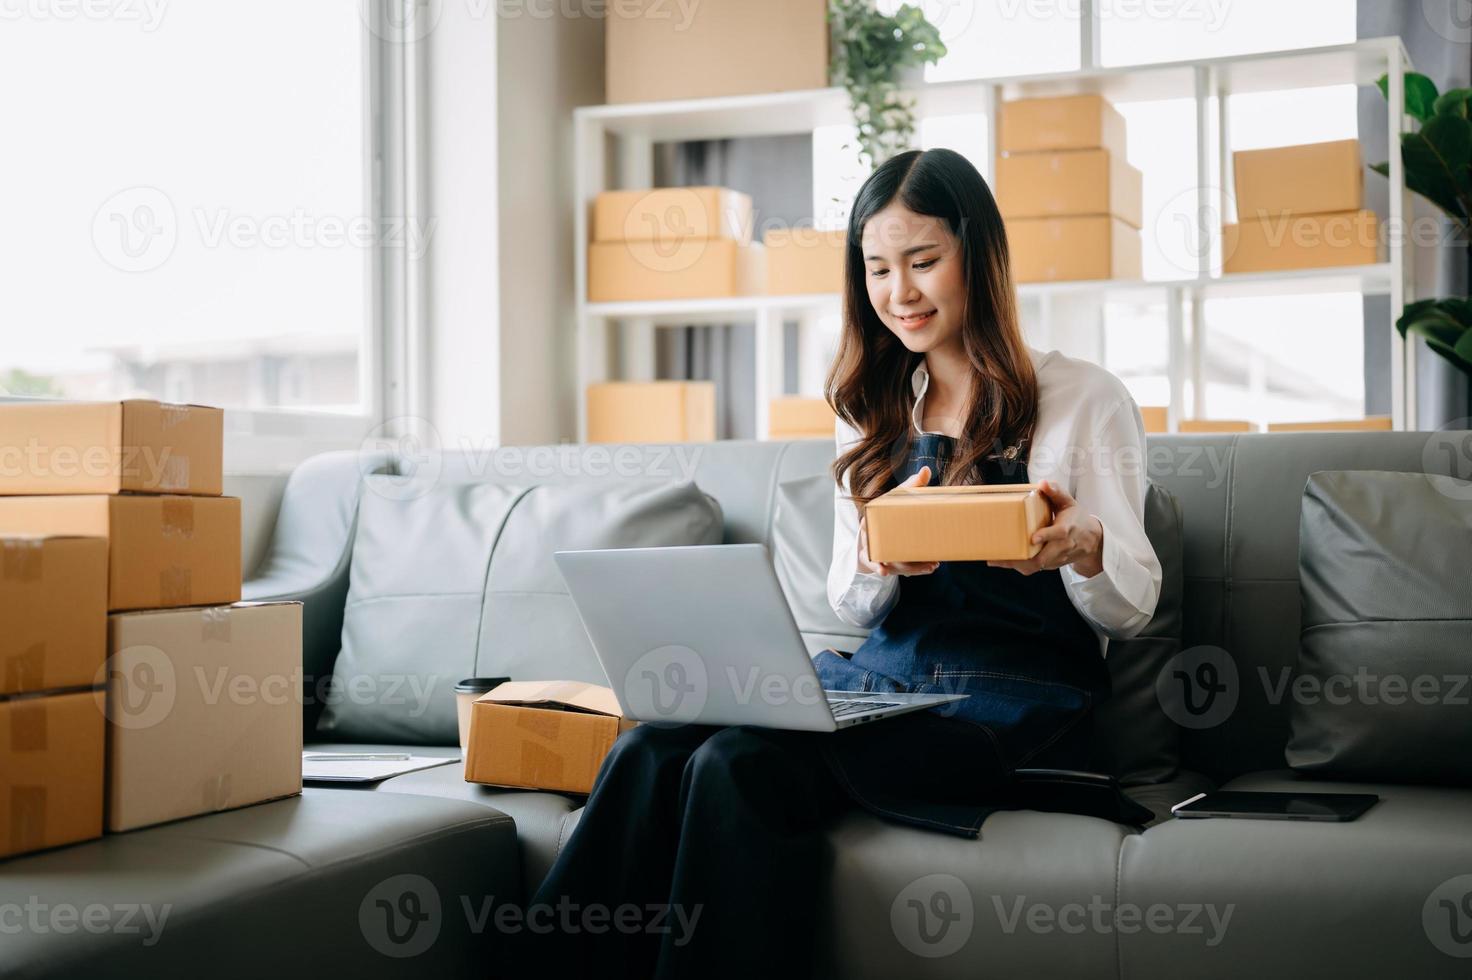 jong Aziatisch bedrijf eigenaar vrouw bereiden pakket doos en staand controleren online bestellingen voor leveren naar klant Aan tablet, laptop boodschappen doen online concept. foto